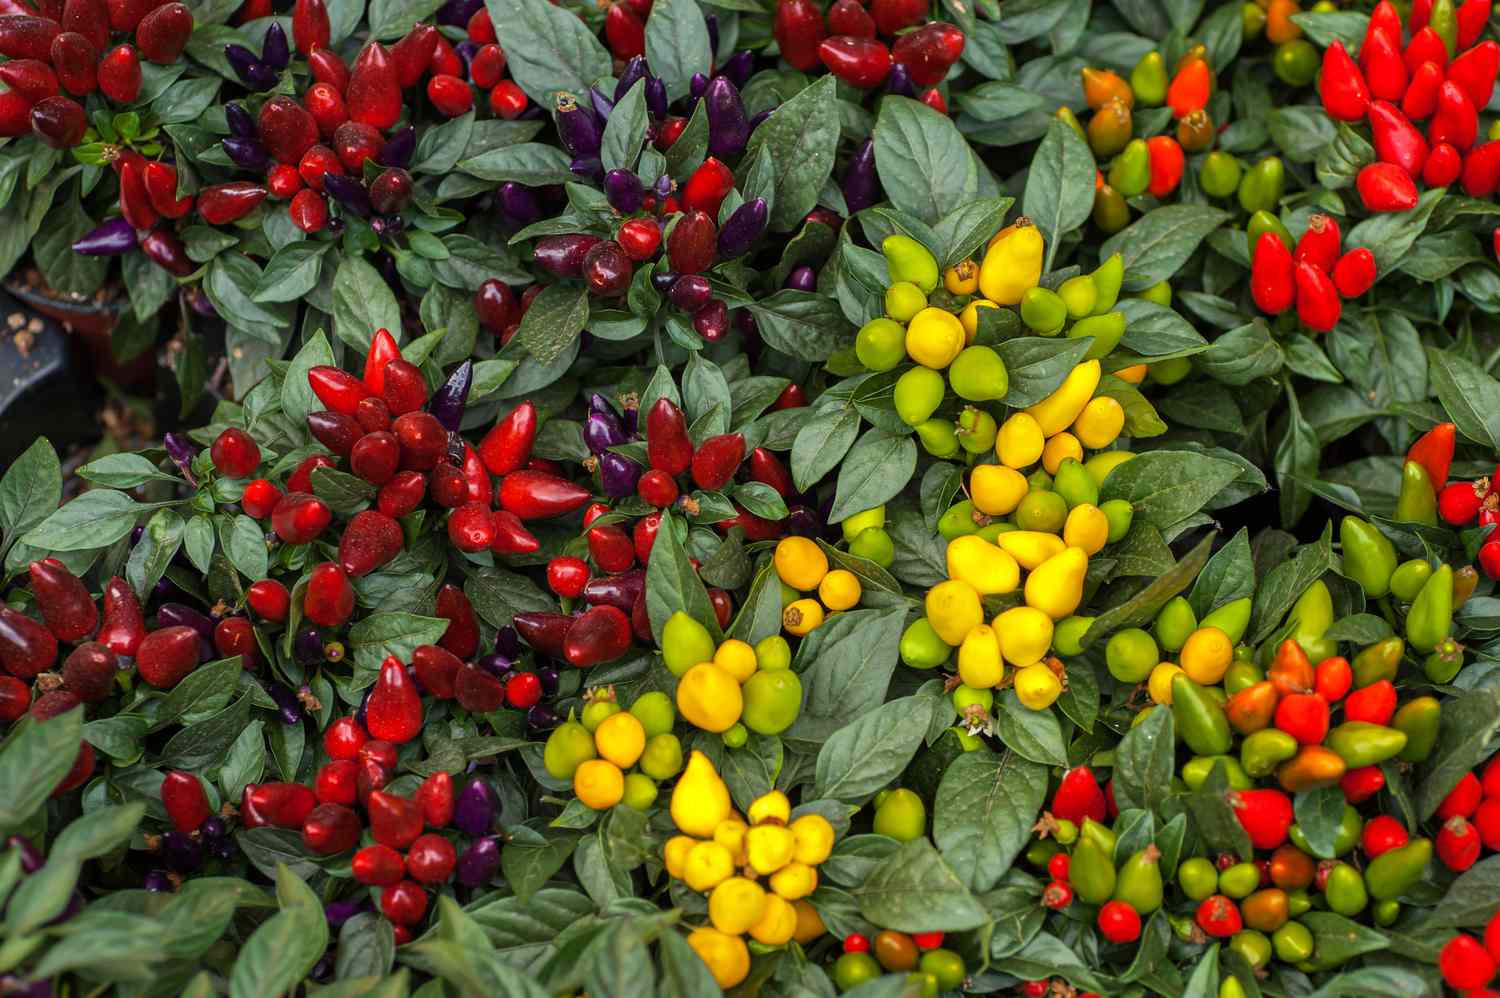 Planta de pimiento ornamental con pequeños racimos de pimientos de color rojo intenso, amarillo y verde 